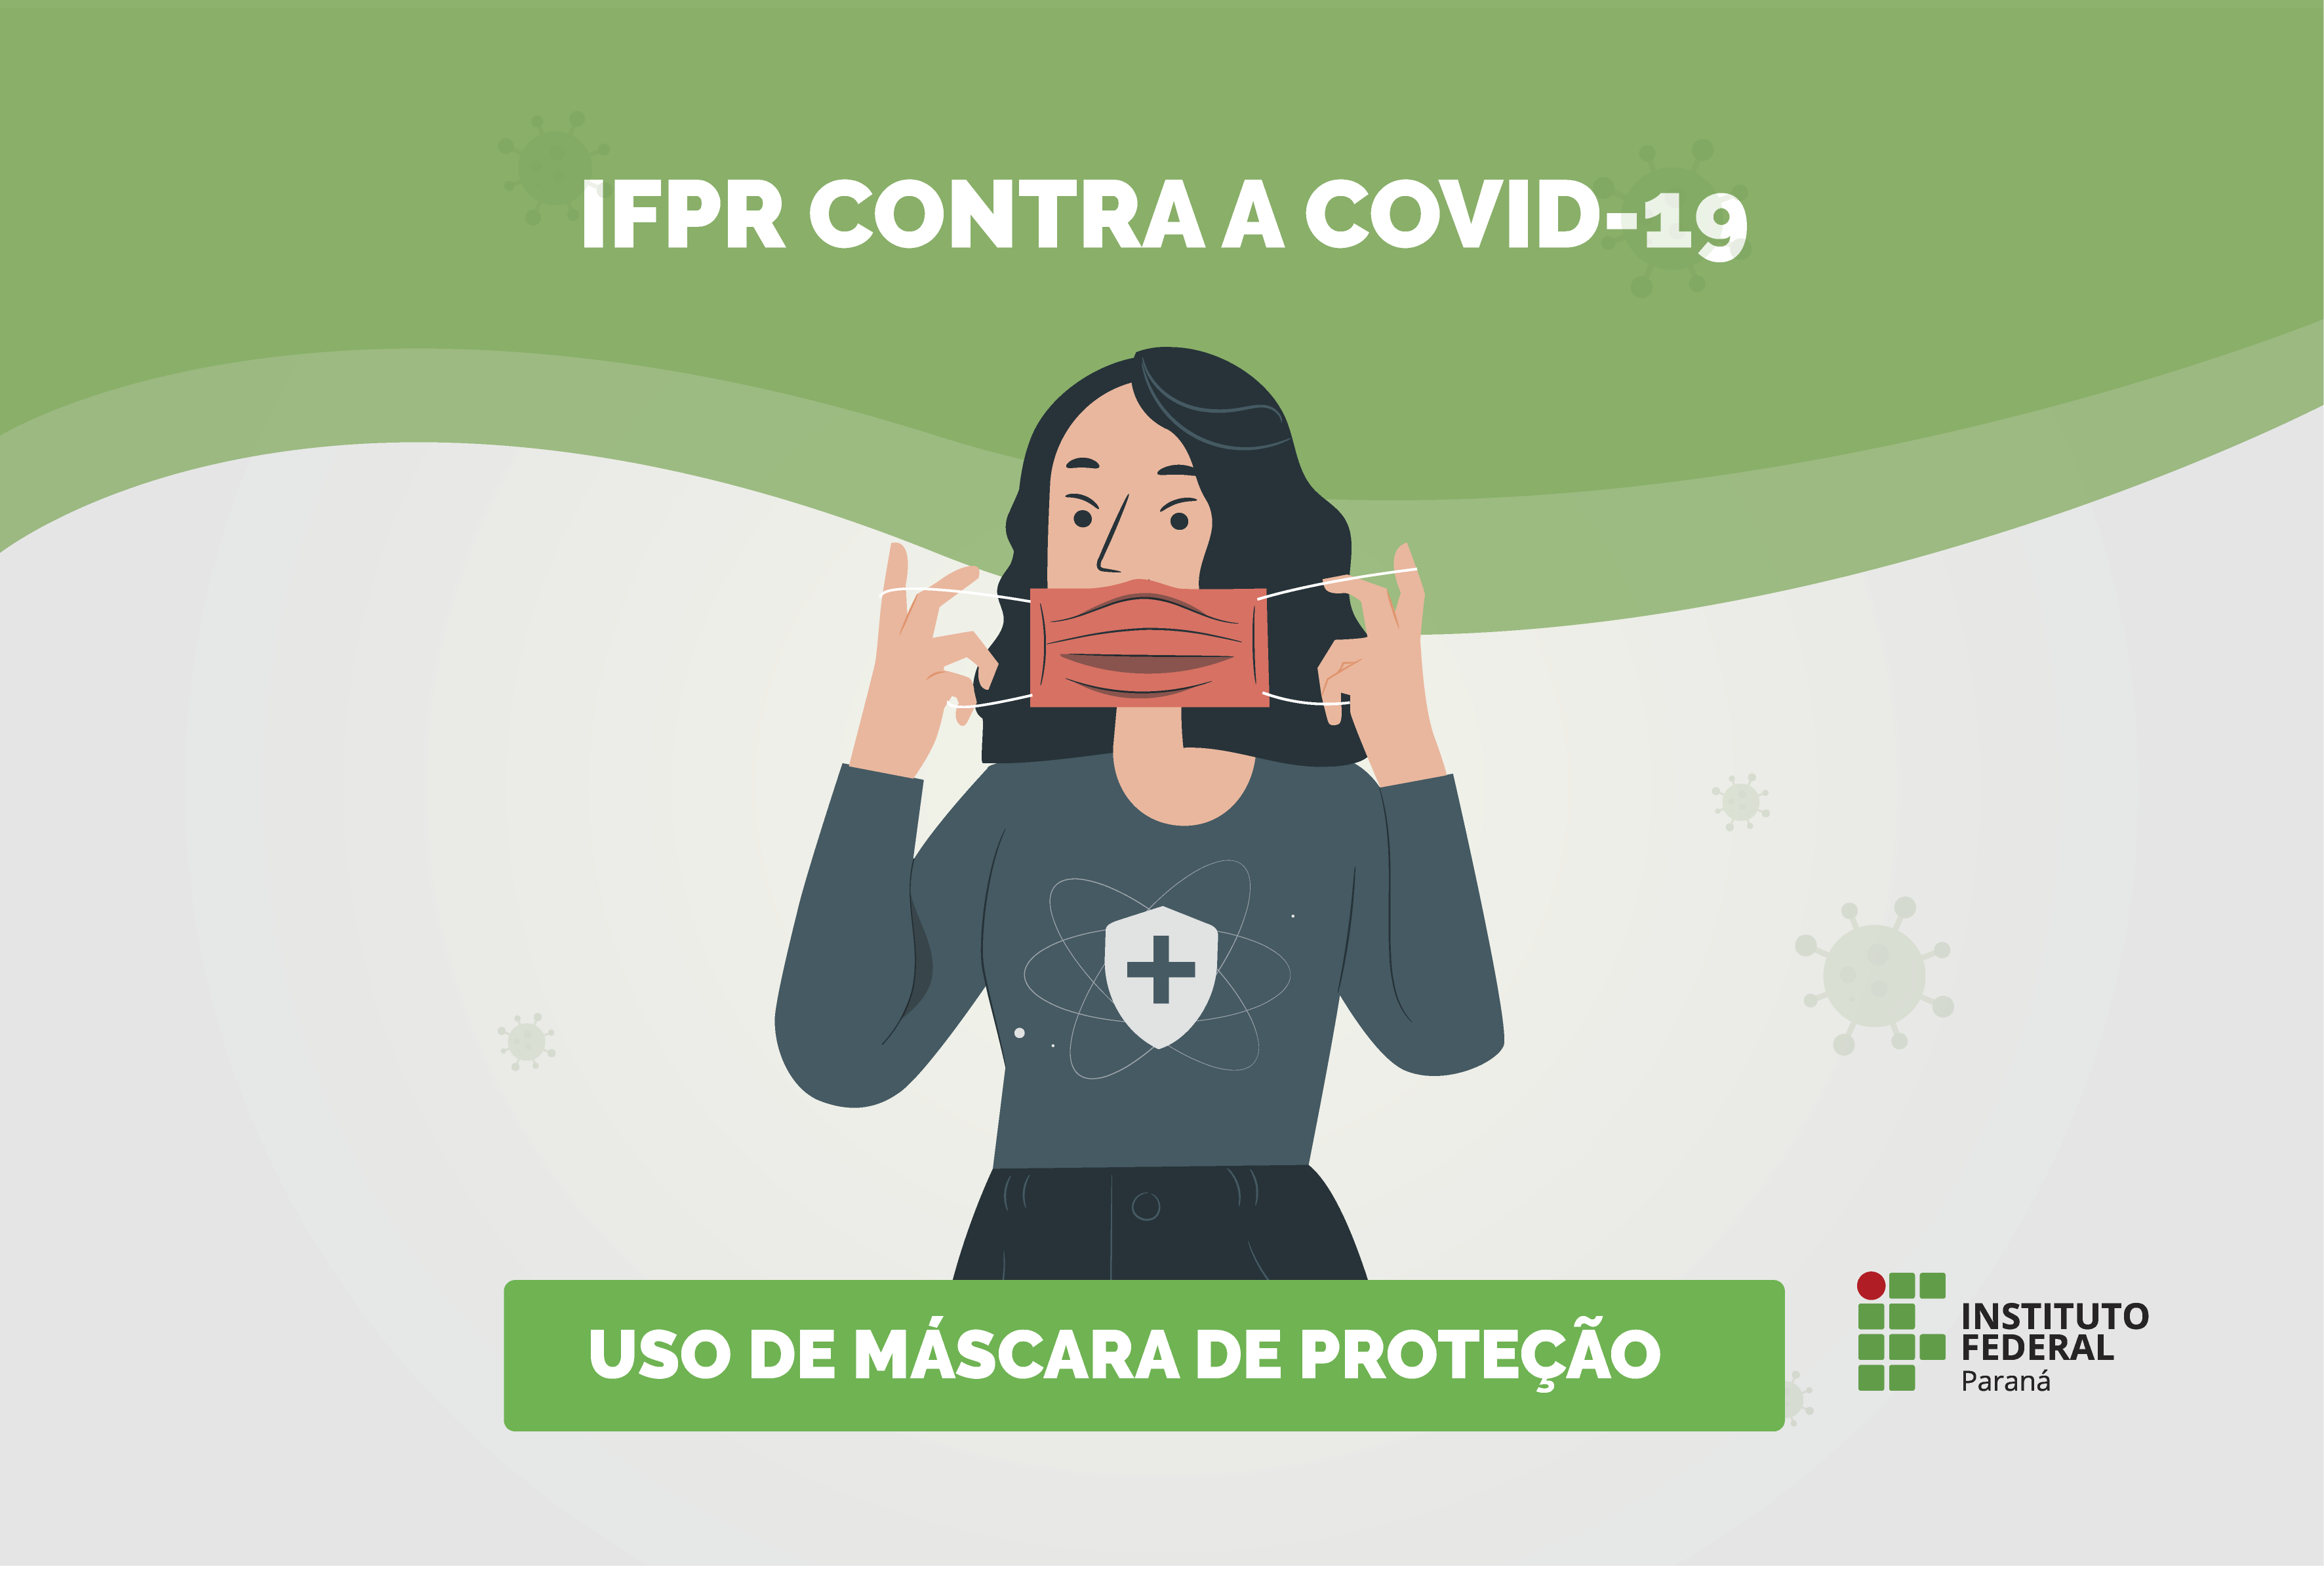 "IFPR contra a covid-19"